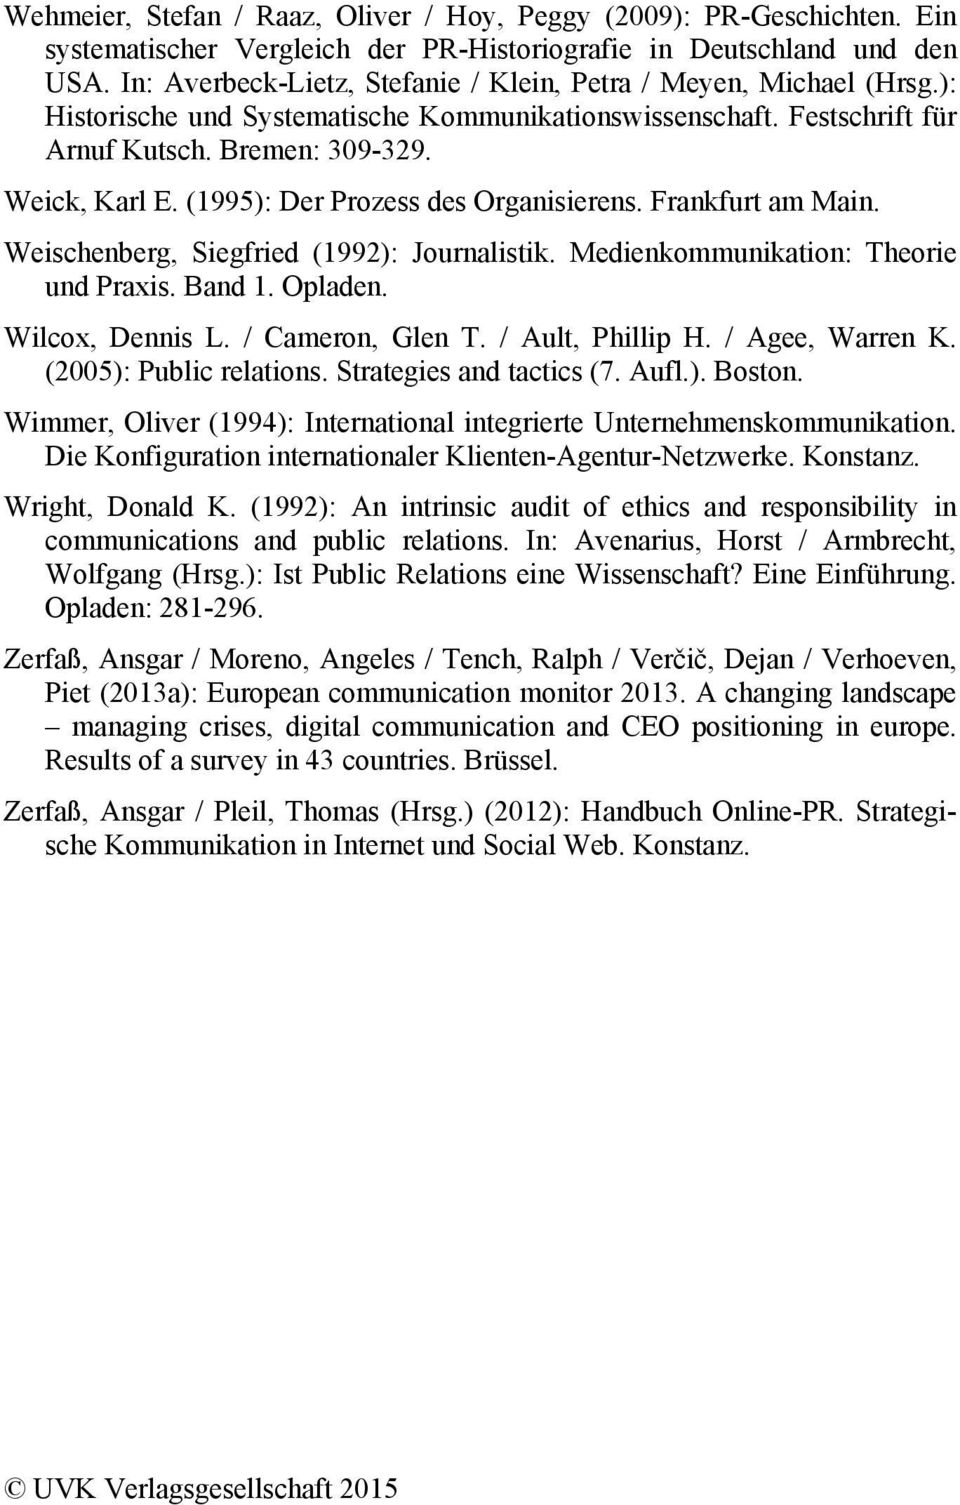 (1995): Der Prozess des Organisierens. Frankfurt am Main. Weischenberg, Siegfried (1992): Journalistik. Medienkommunikation: Theorie und Praxis. Band 1. Opladen. Wilcox, Dennis L. / Cameron, Glen T.